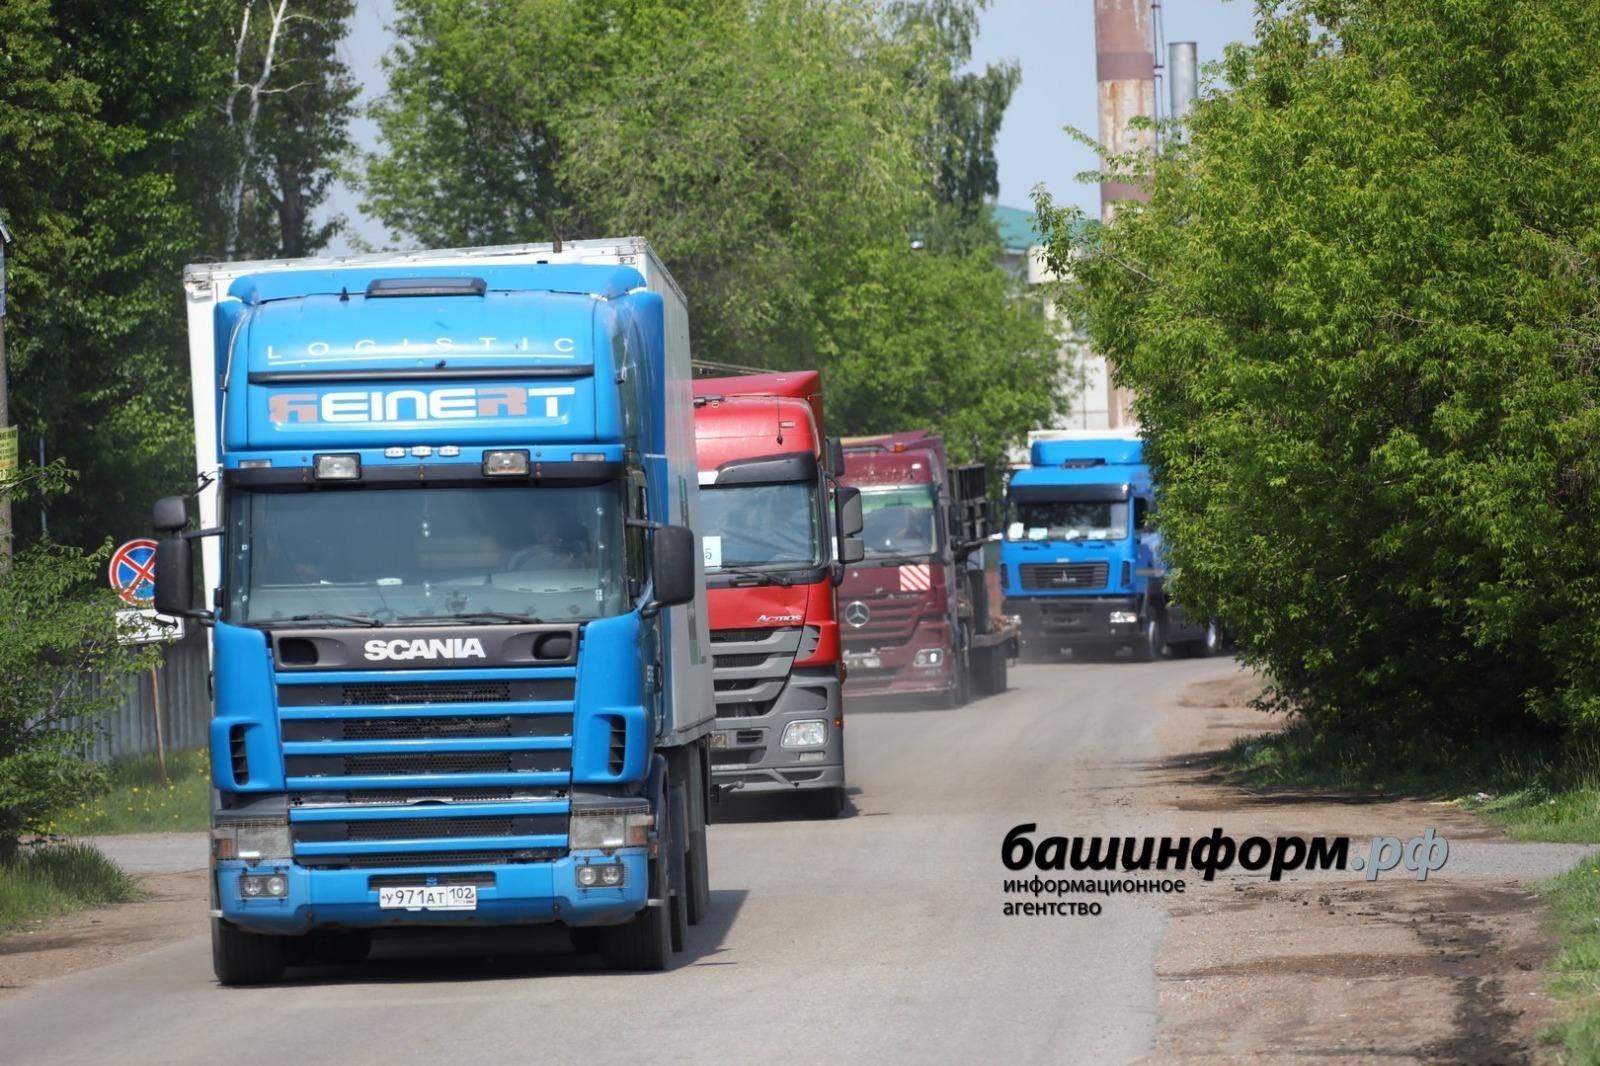 Из Башкирии в зону СВО гумконвой доставил сотни тонн груза